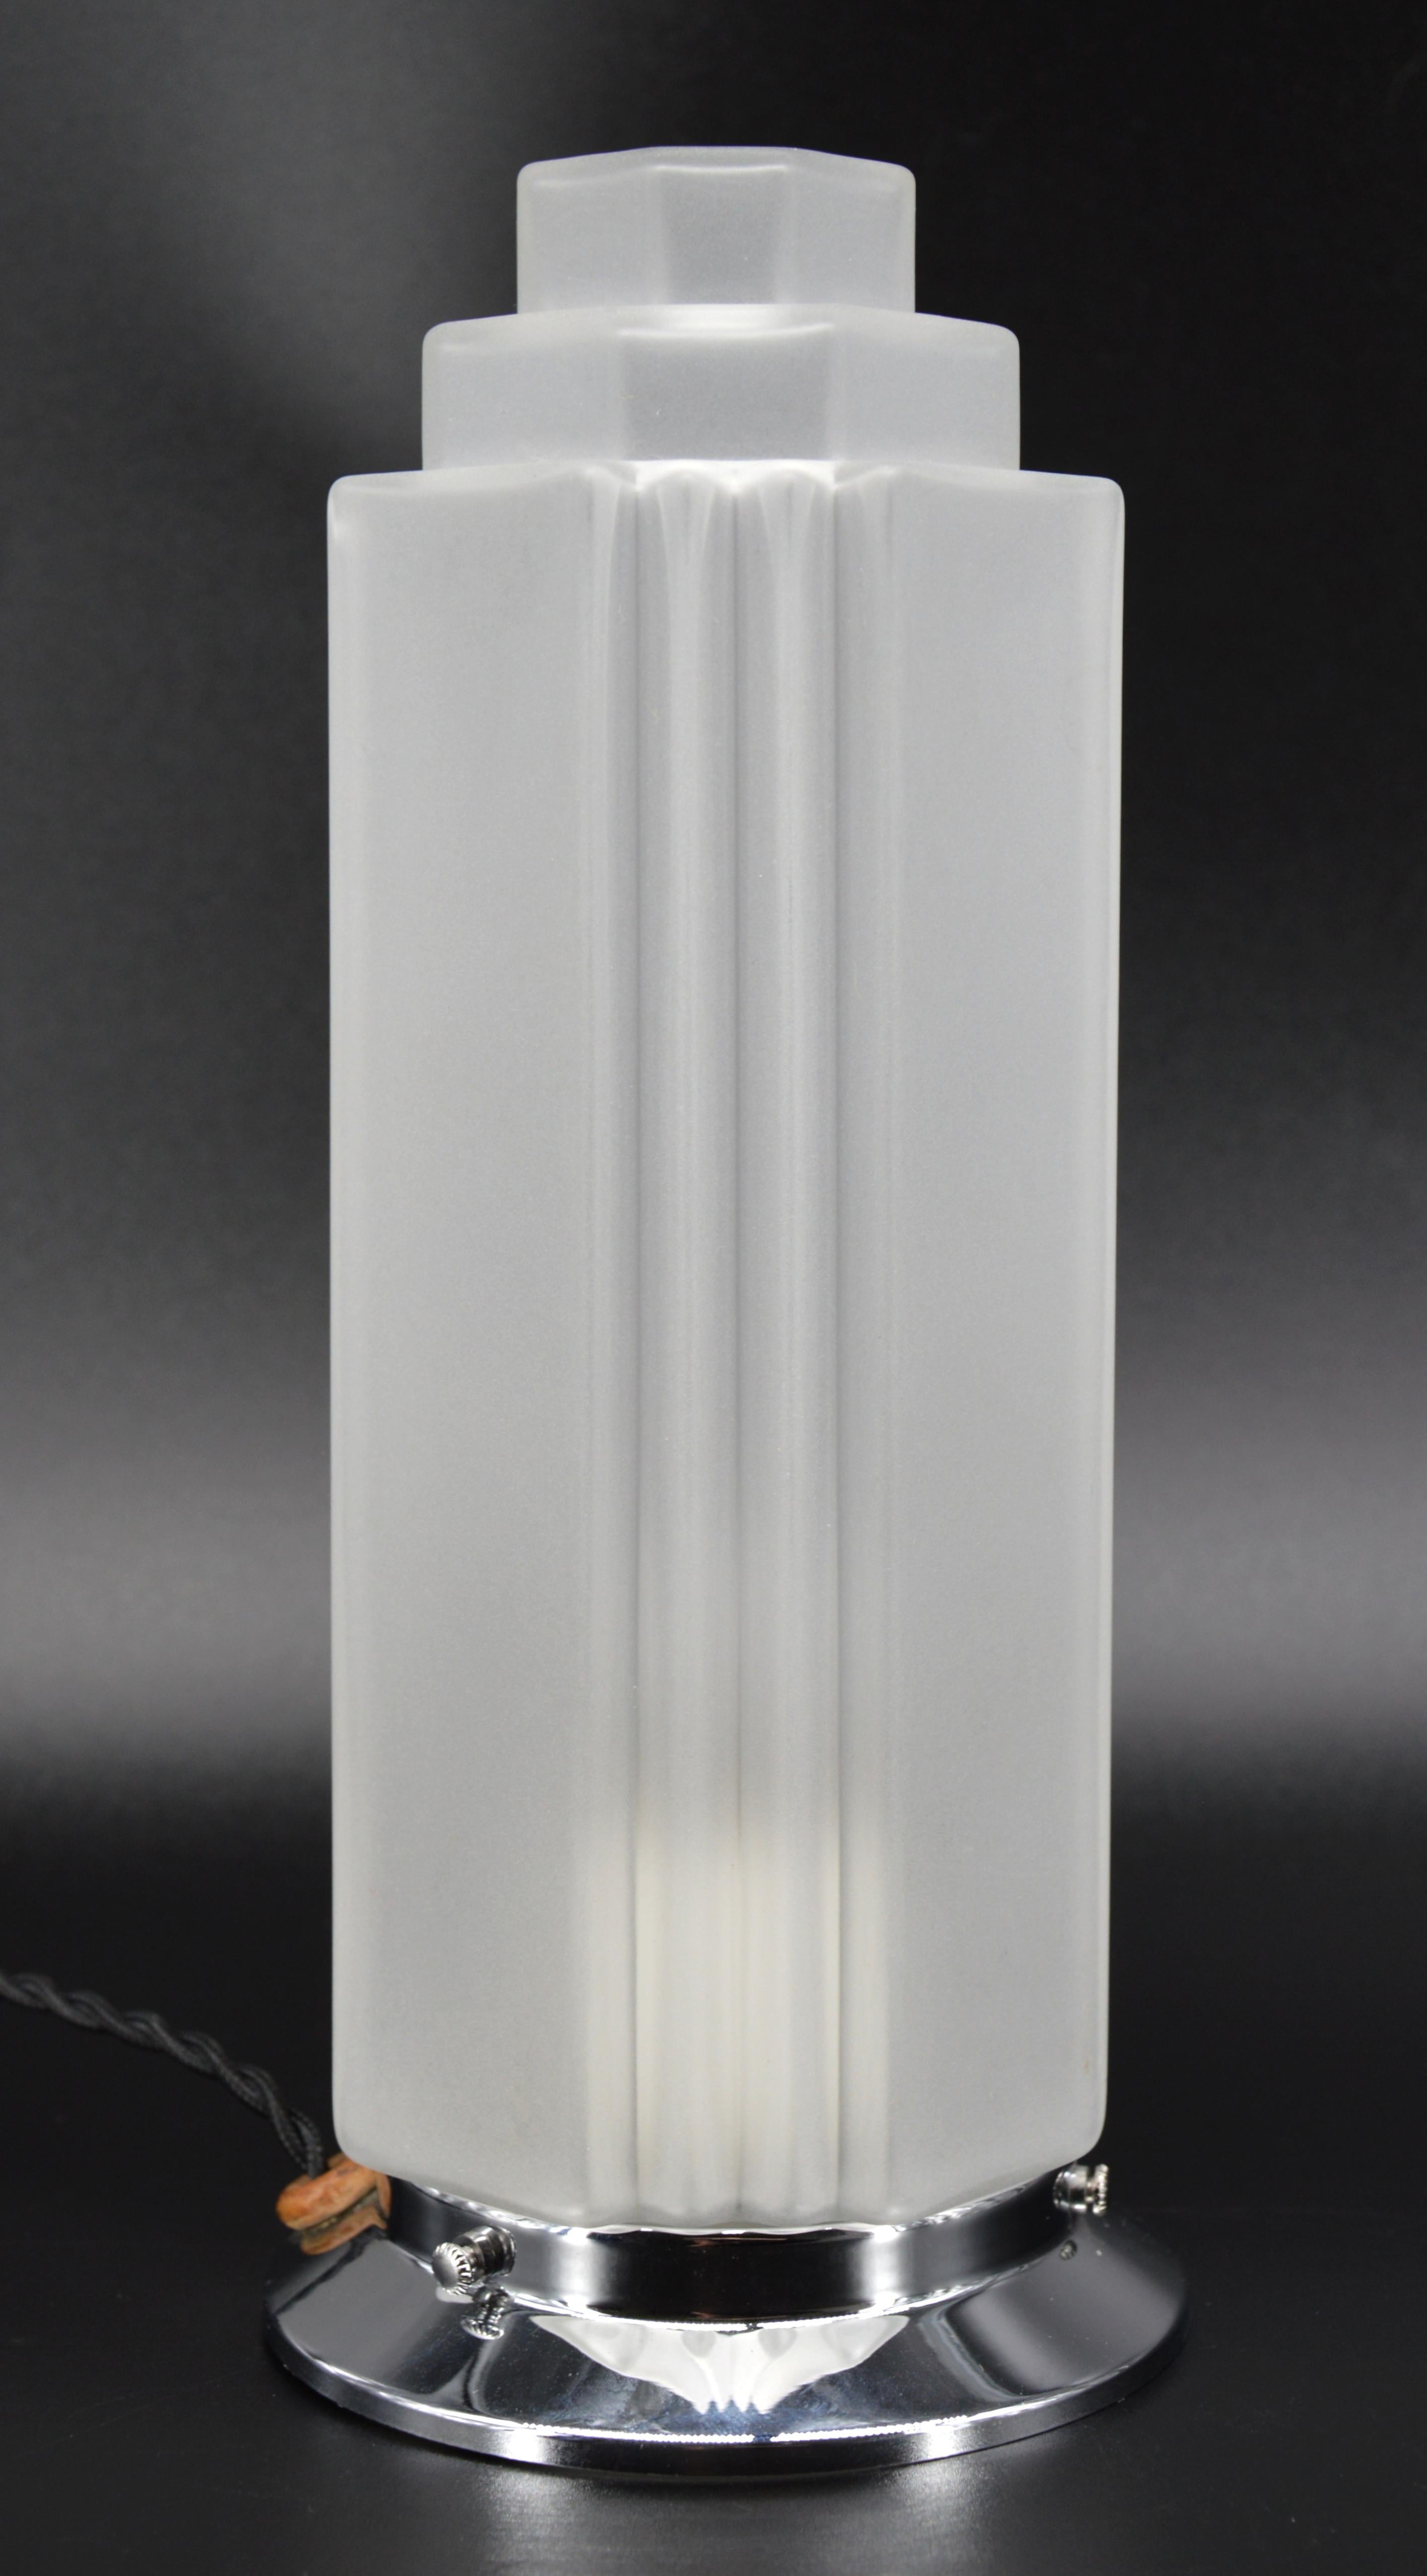 Lampe de table Art déco française, France, années 1930. Forme de gratte-ciel. Abat-jour en verre dépoli sur sa base chromée. 3 lampes sont disponibles. Hauteur : 26,8 cm (10,6